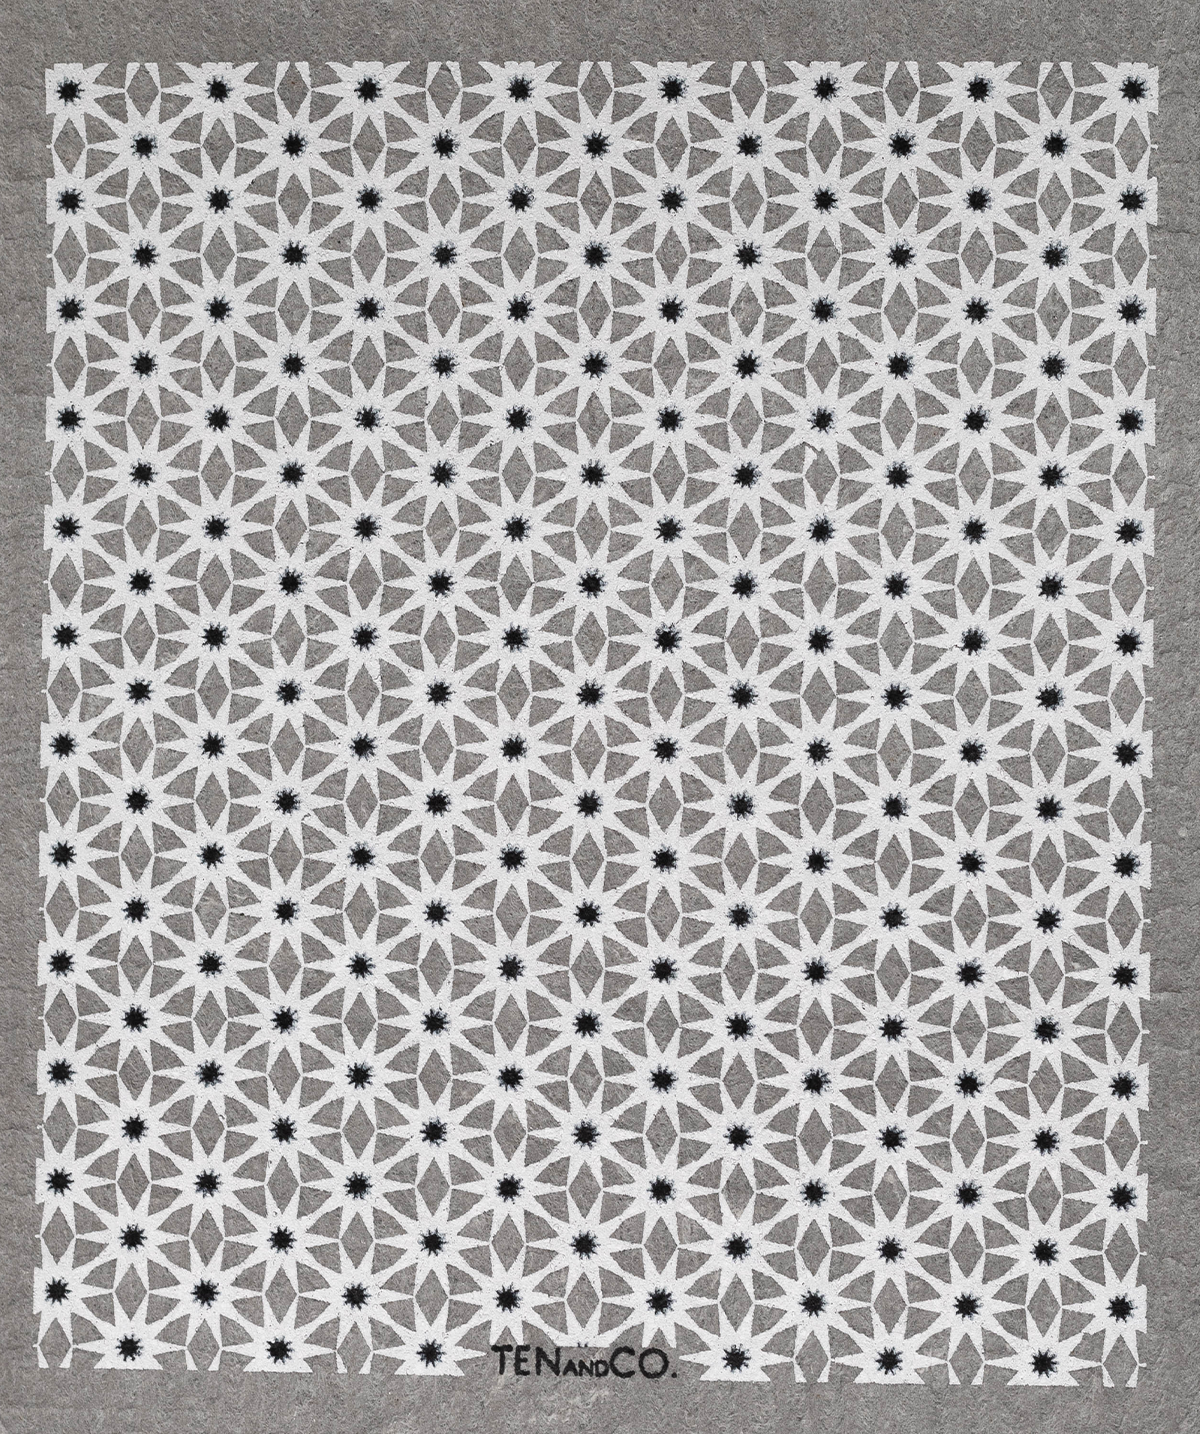 Ten and Co. Starburst Sponge Cloth in Grey